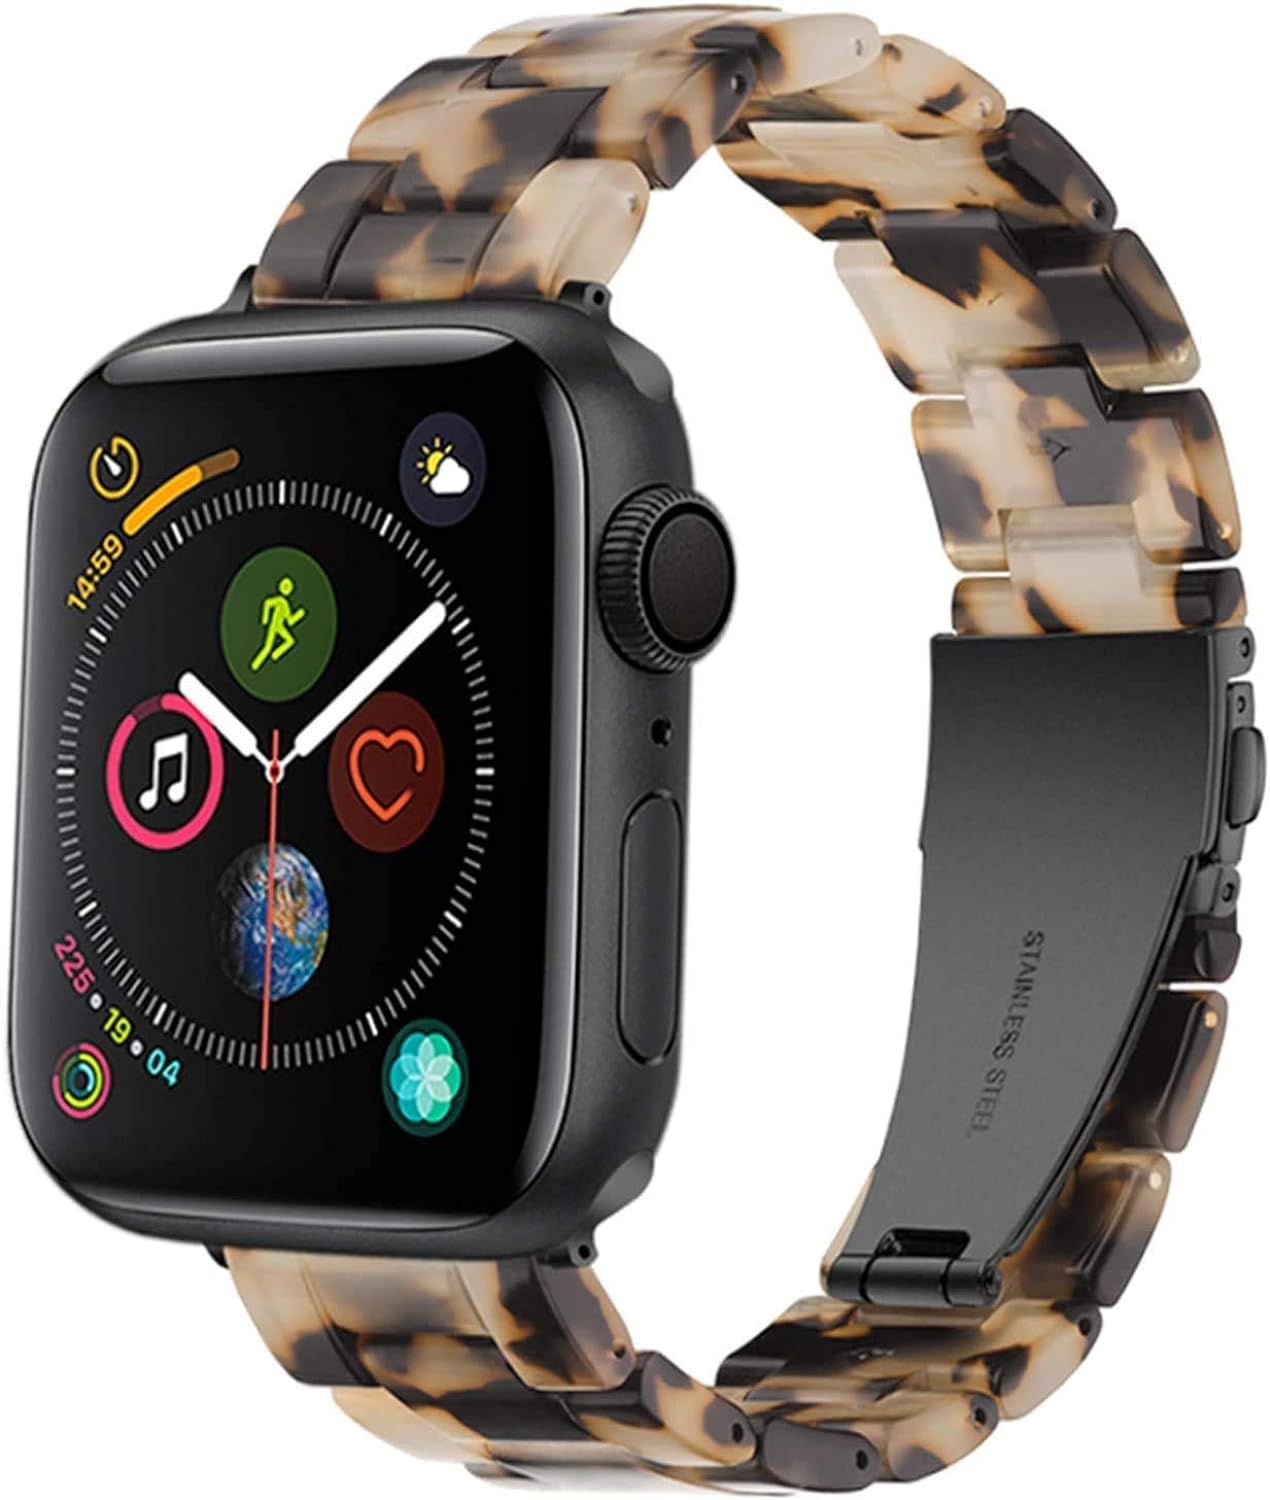 Nyeneil Comptible With Apple Watch  | Amazon (US)